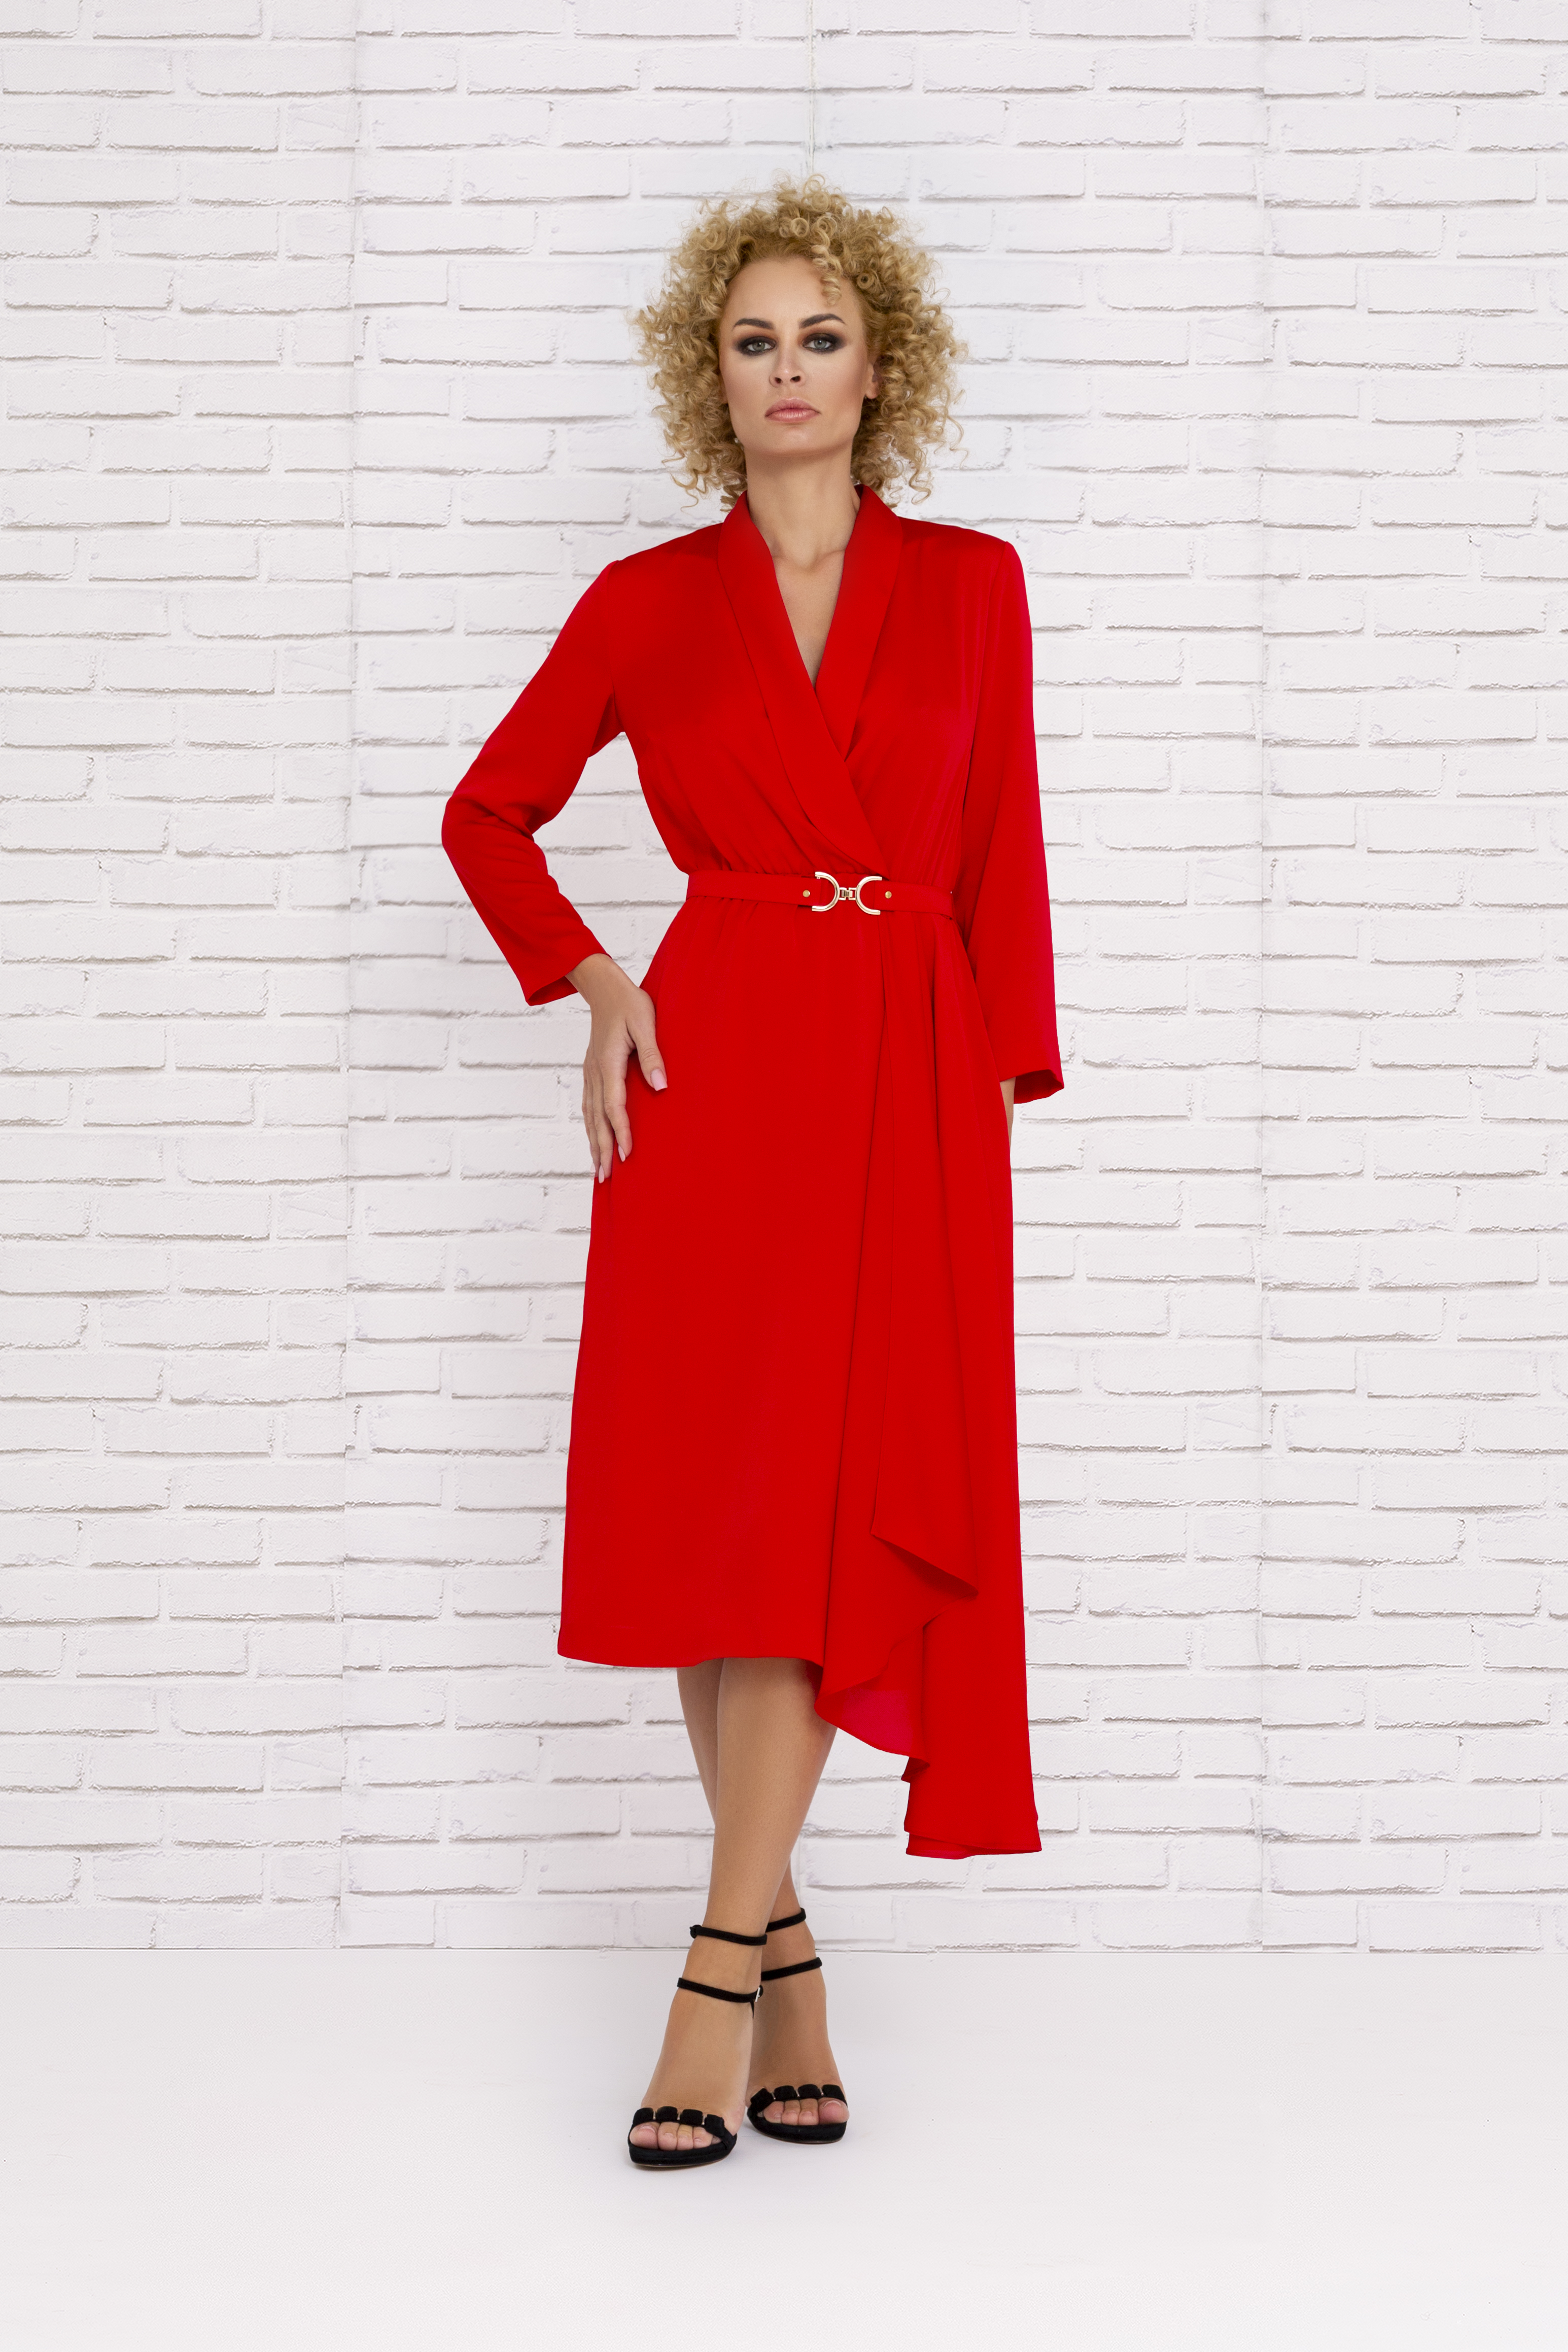 Vestido rojo de fiesta con corte asimétrico y mangas